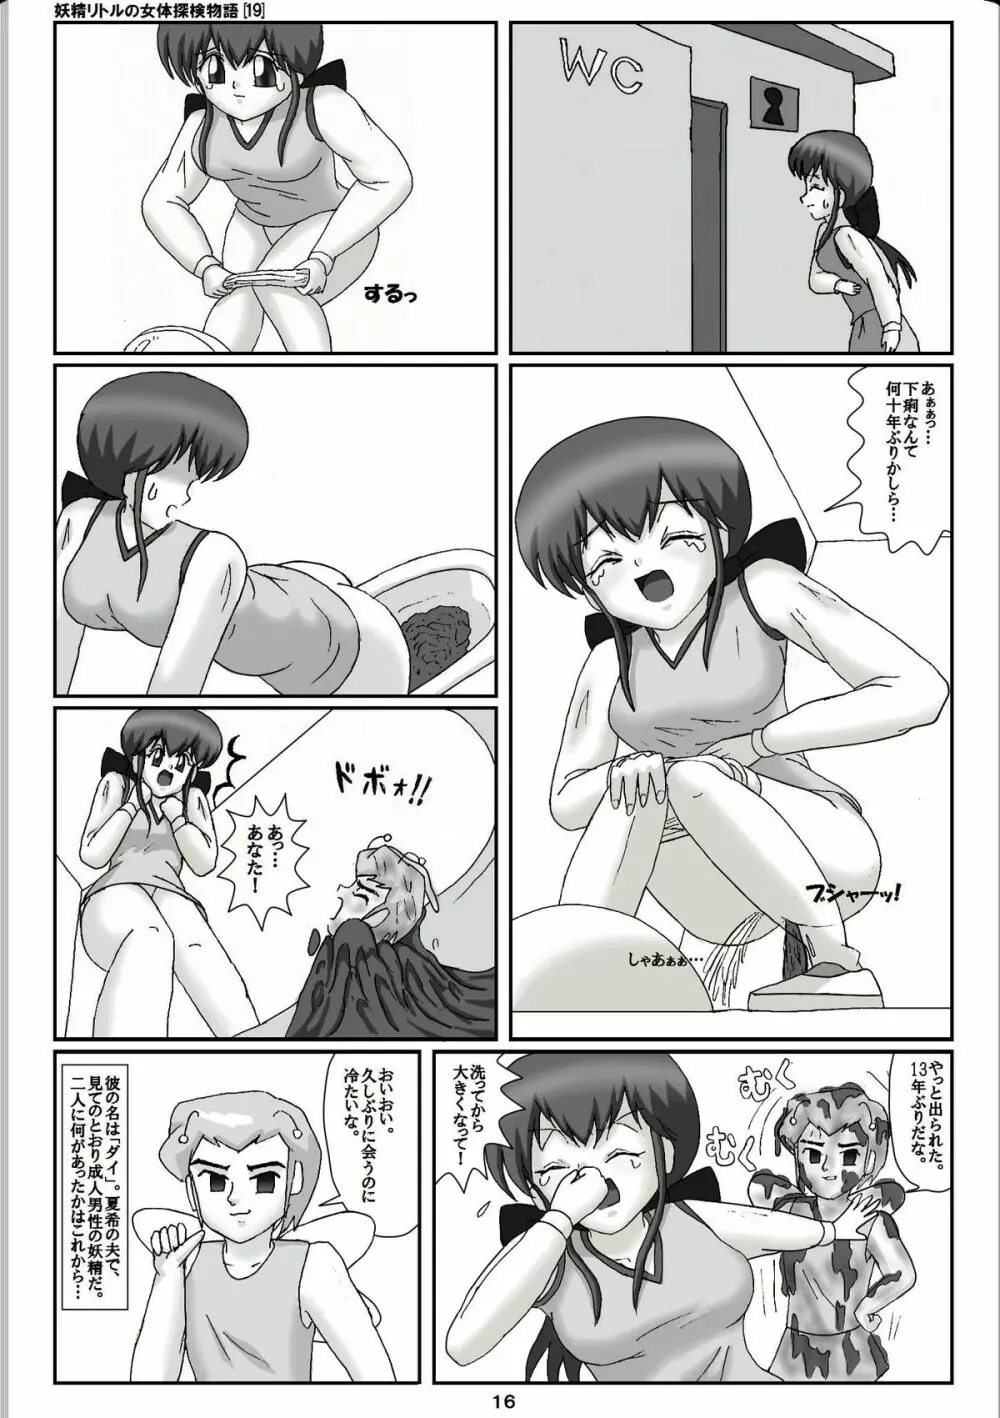 妖精リトルの女体探検物語 19 16ページ